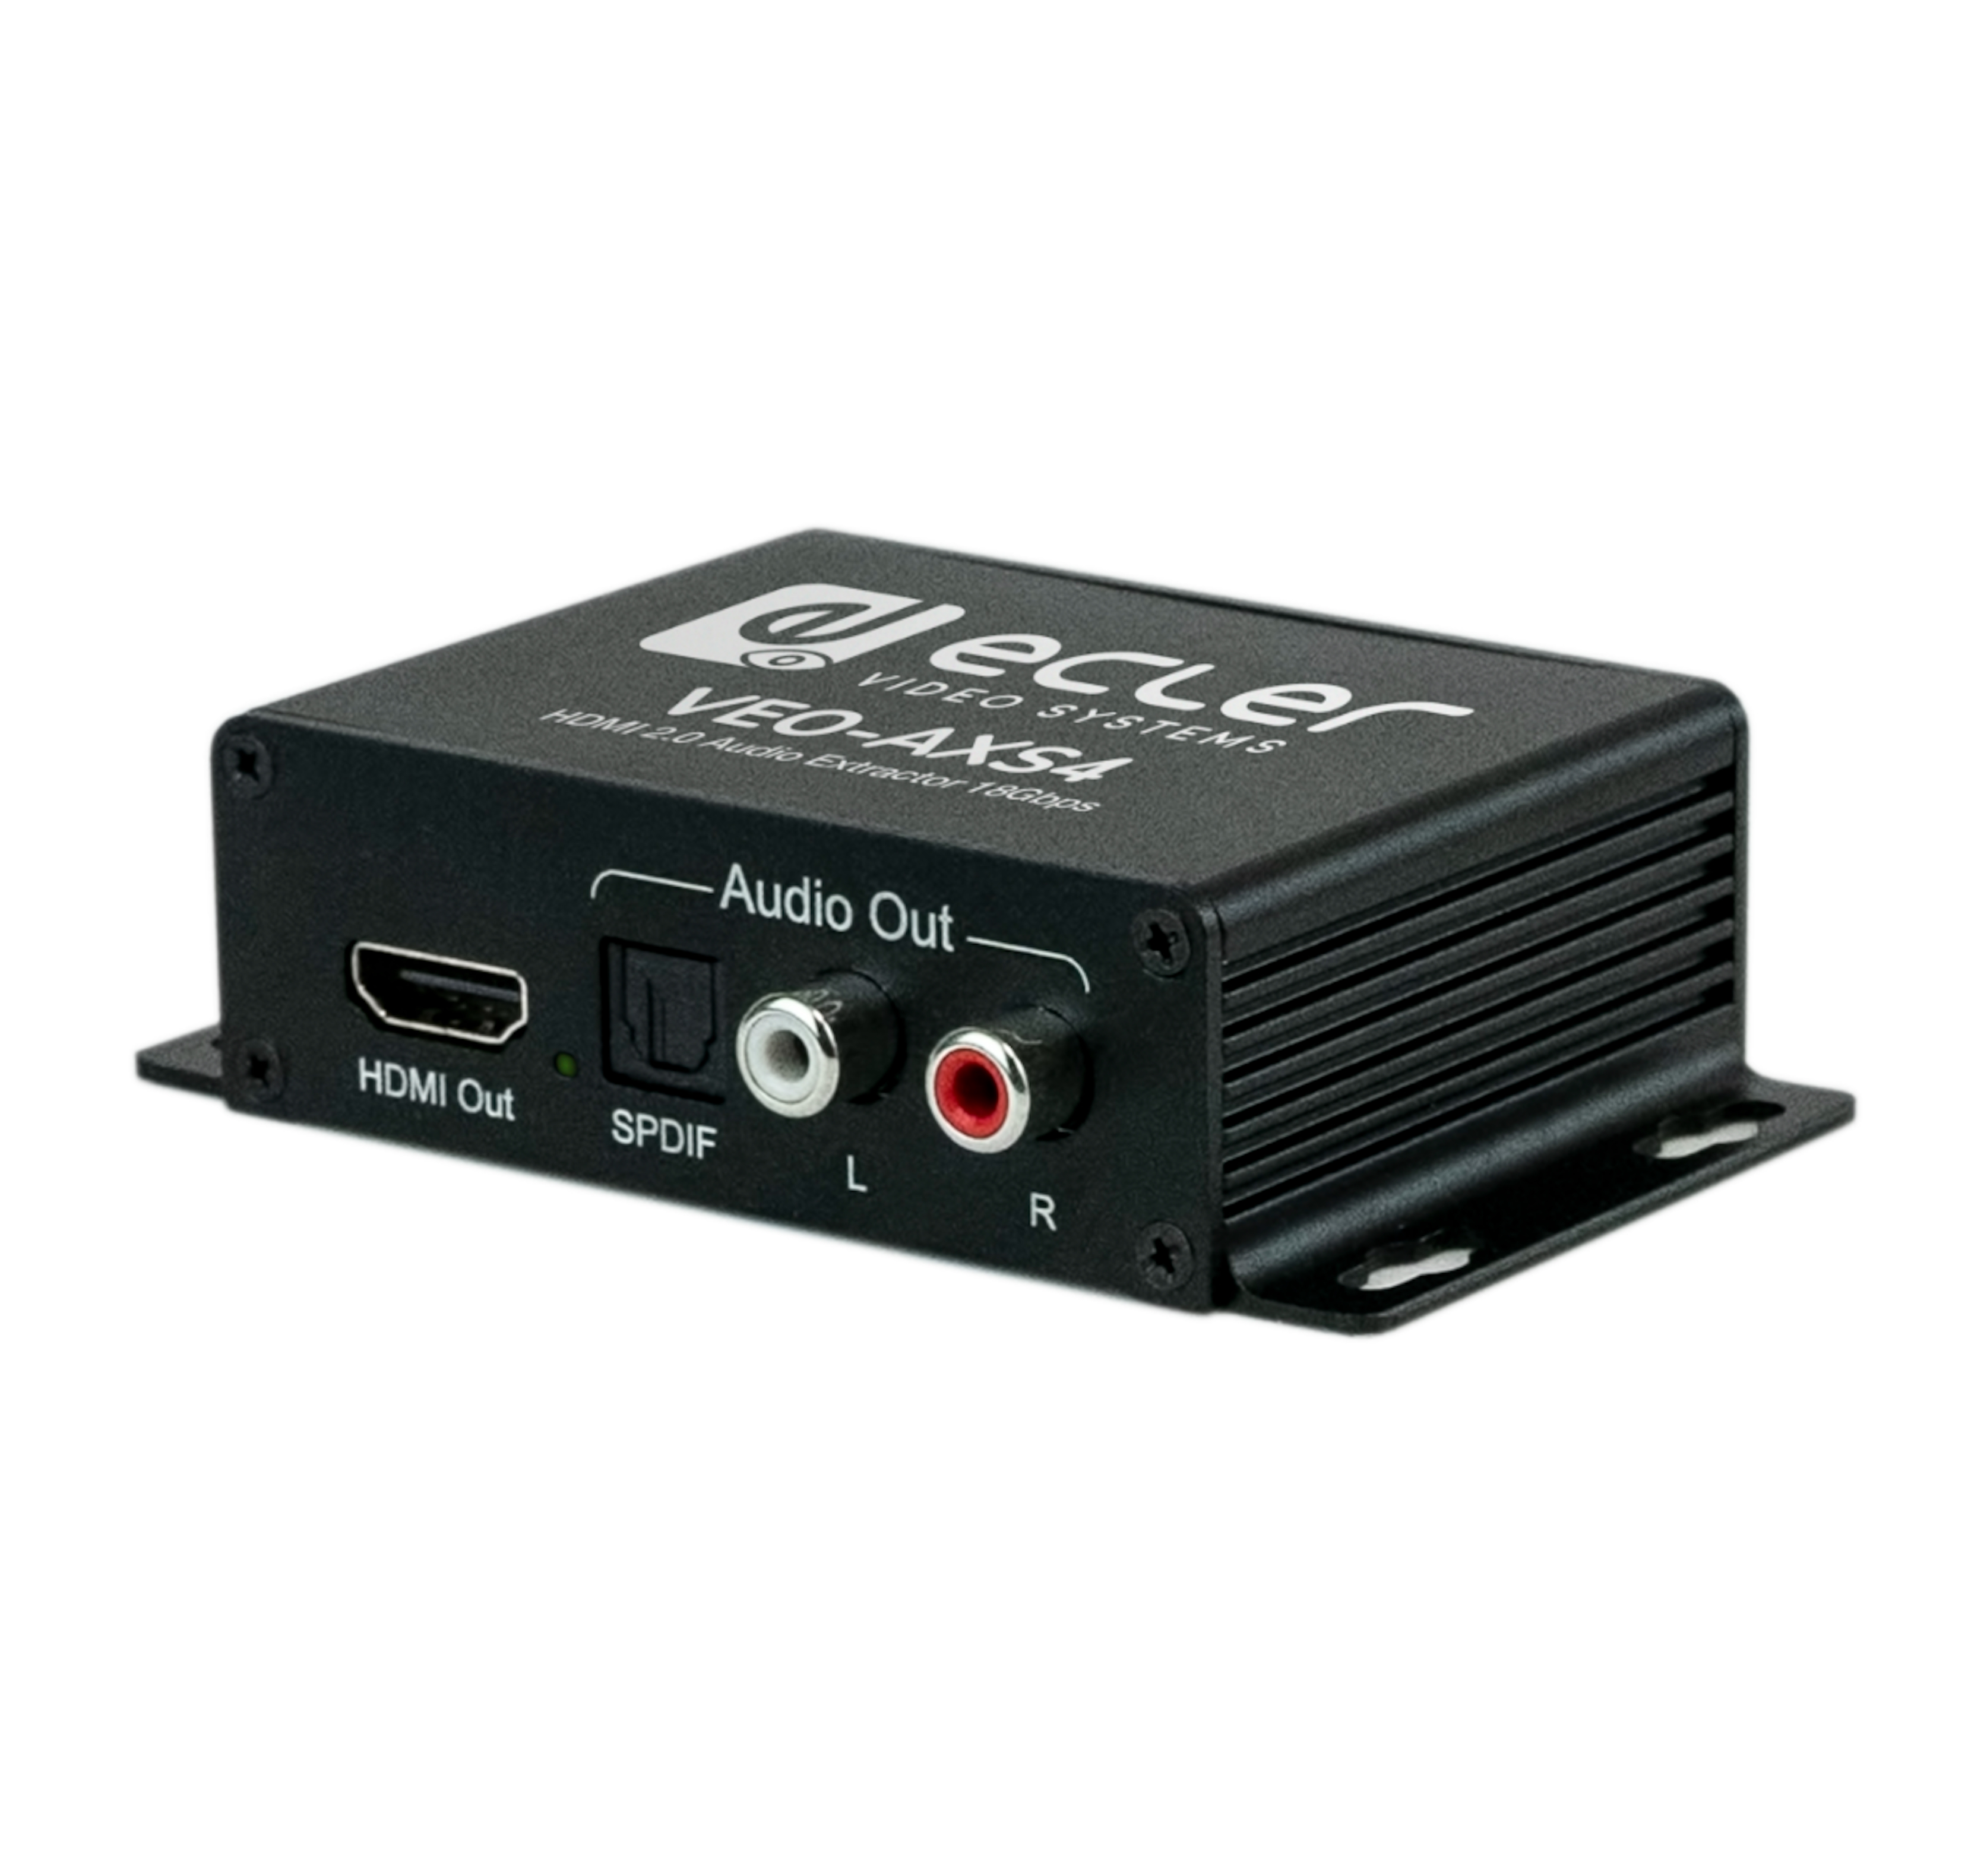 HDMI коммутаторы, разветвители, повторители Ecler VEO-AXS4 разветвитель hdmi 4k ks 340 сплиттер переключатель 3 входа на 1 выход на кабеле